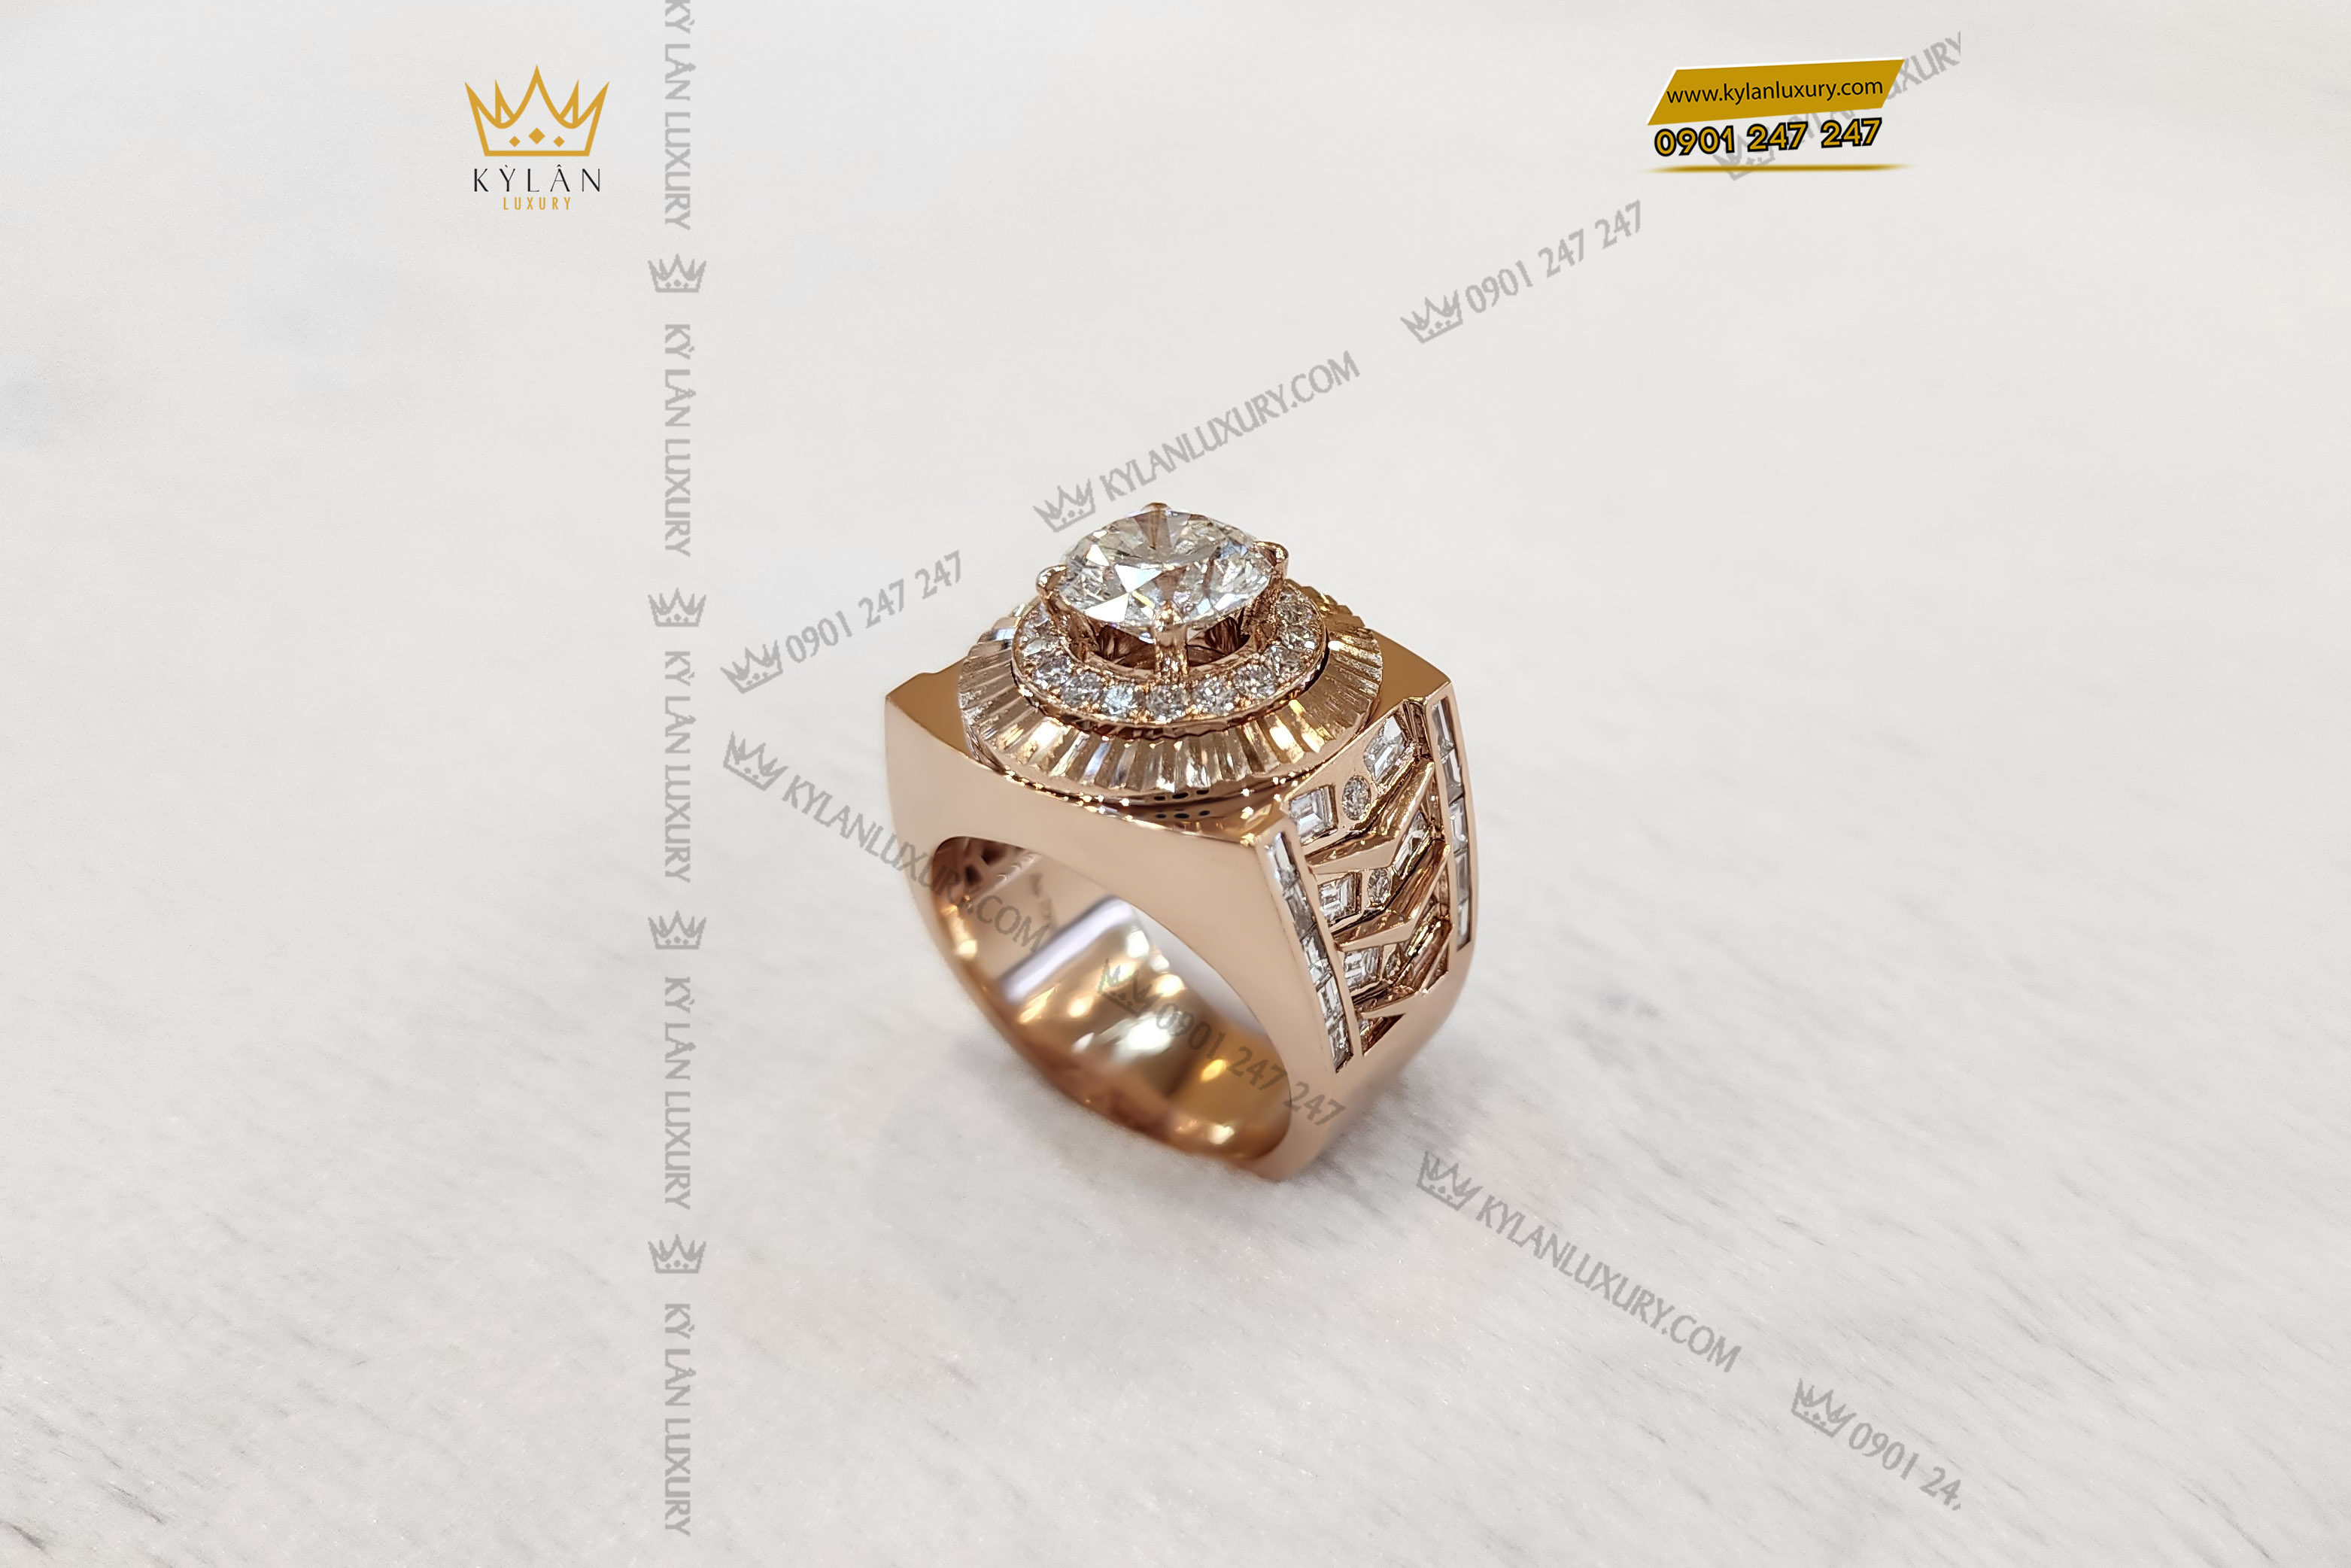 Nổi bật trên vỏ nhẫn là kim cương đính theo logo thương hiệu Vertu